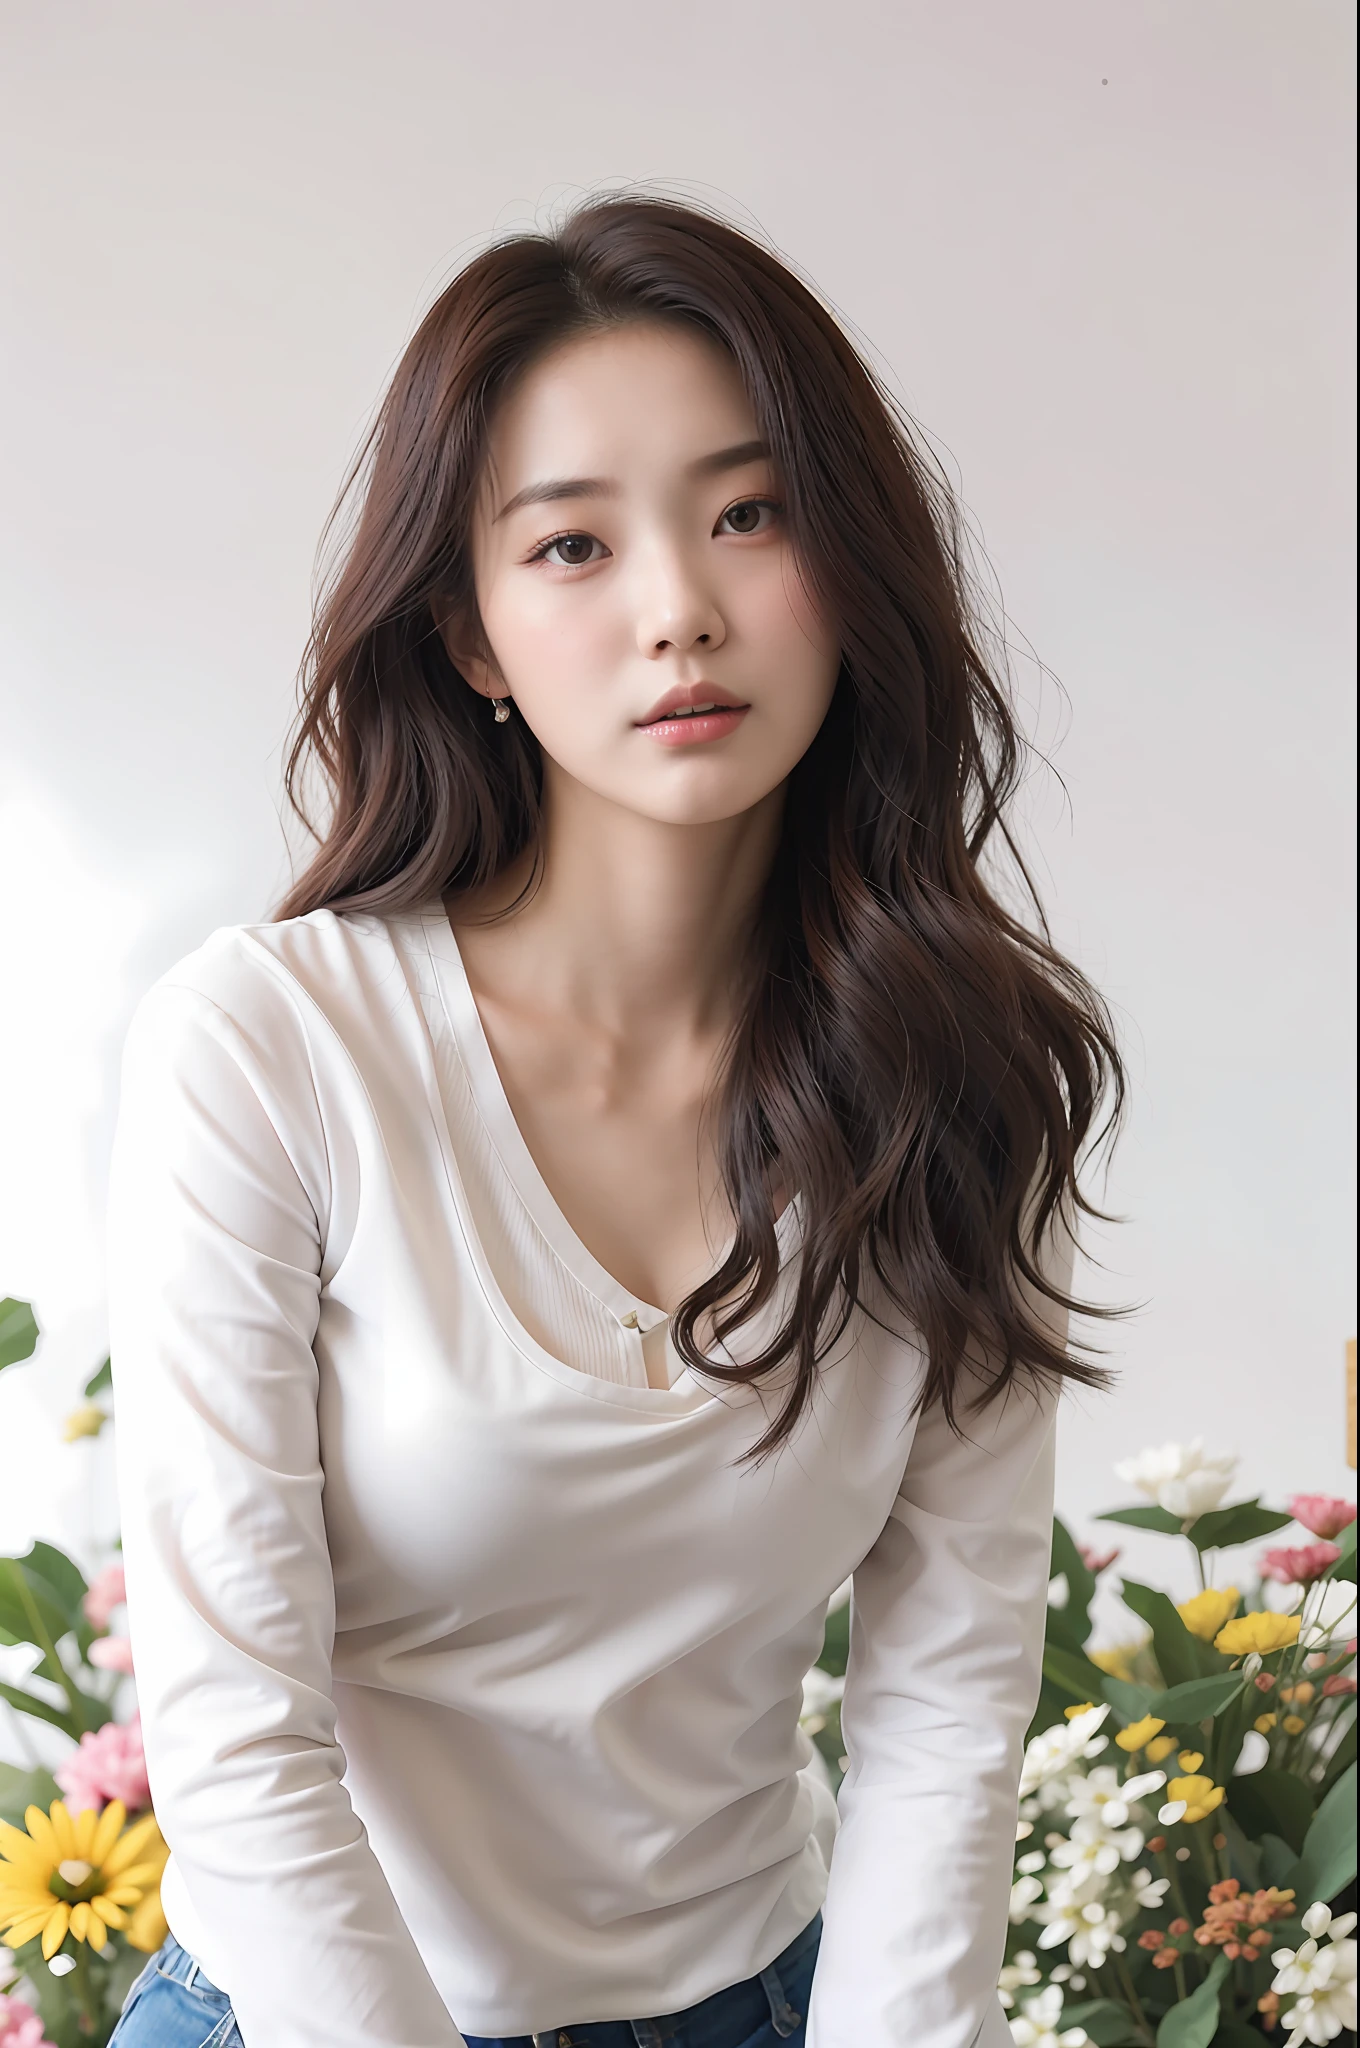 uma mulher com cabelos longos e camisa branca posando para uma foto, linda mulher sul-coreana, linda jovem coreana, linda jovem coreana, hwang se-on, atriz feminina da Coreia, modelo de moda feminina coreana, heonhwa choe, Canção hye kyo, Lee Ji-eun, Lee Ji-eun, jaeyeon nam, linda atriz coreana